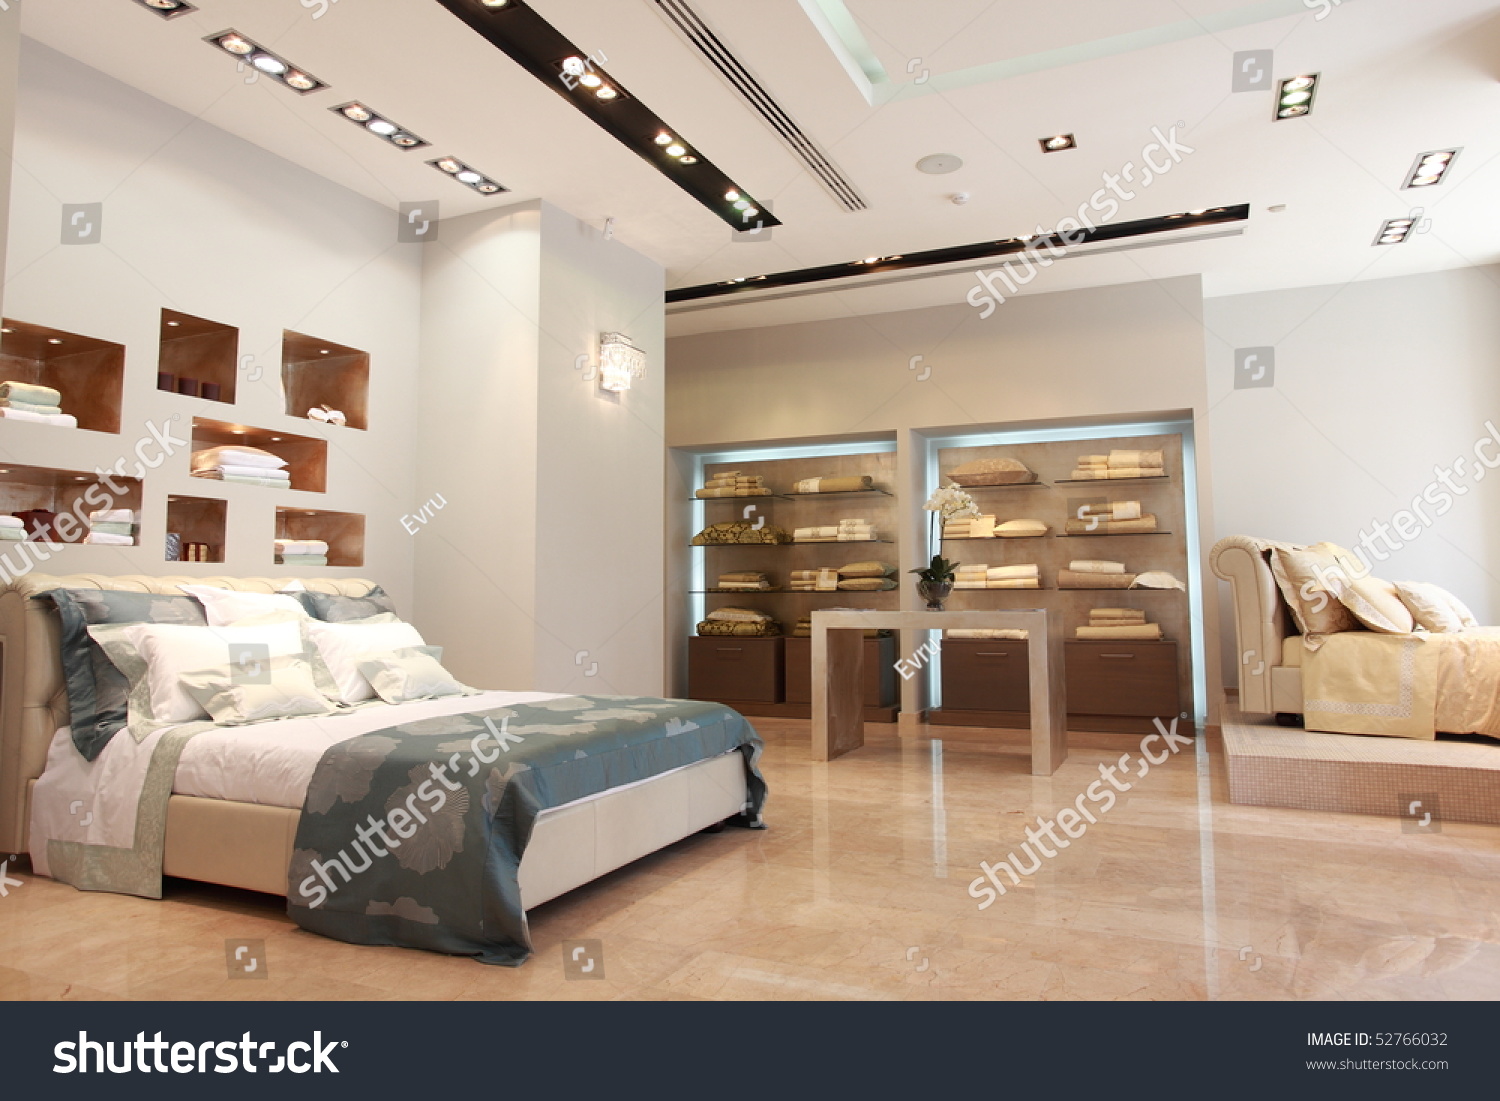 Bed room interior variants in showroom #52766032